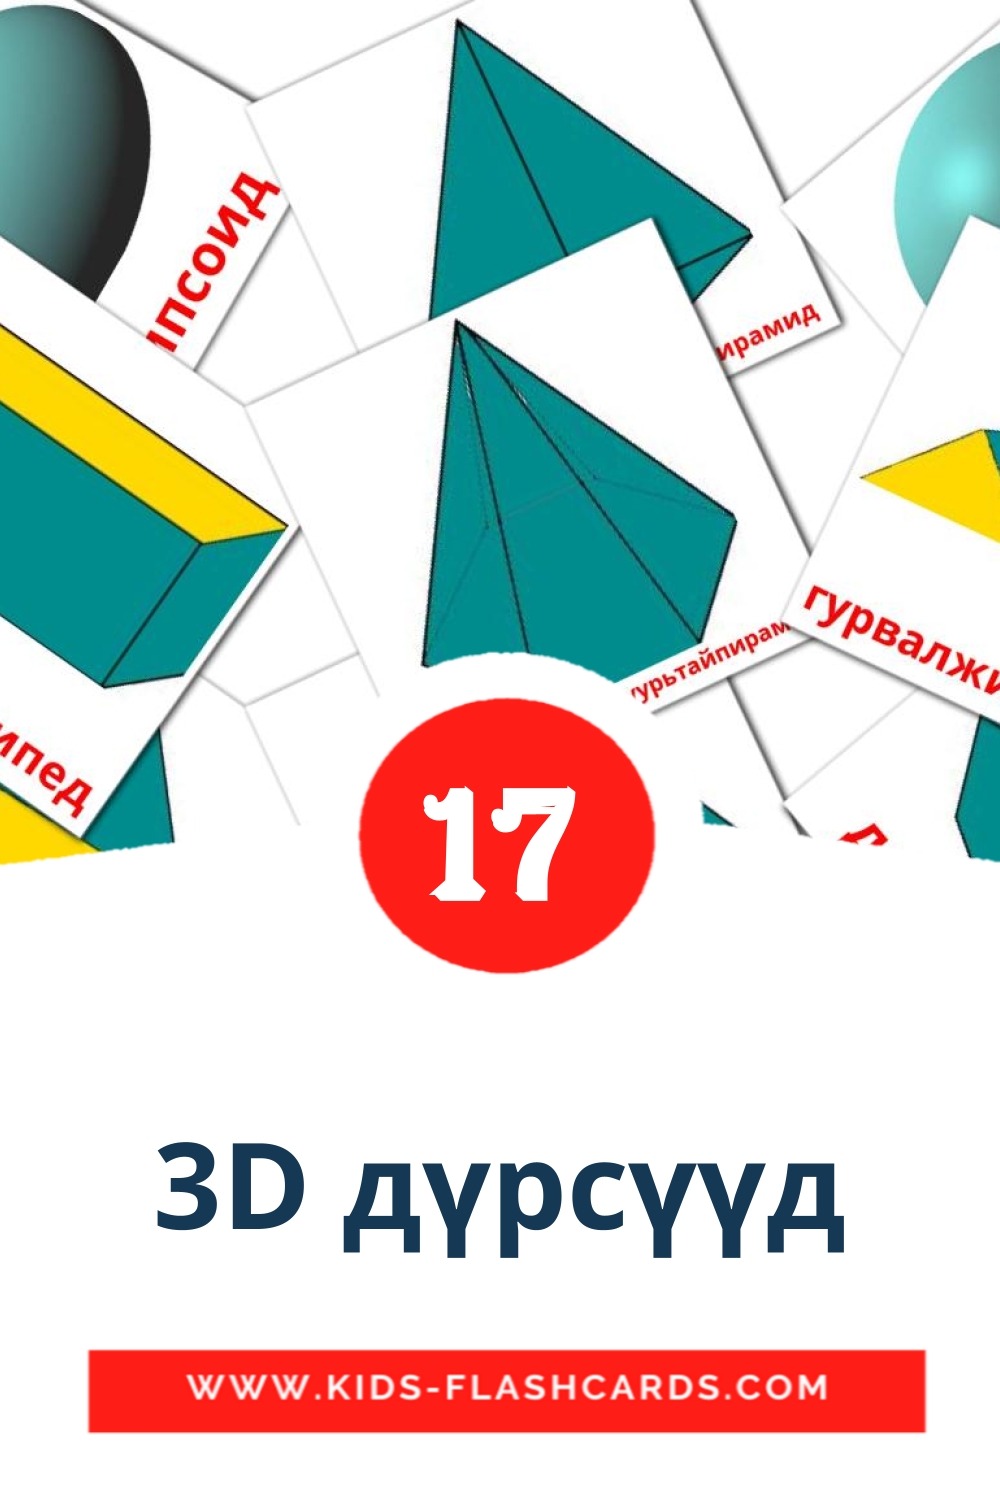 17 cartes illustrées de 3D дүрсүүд pour la maternelle en mongol